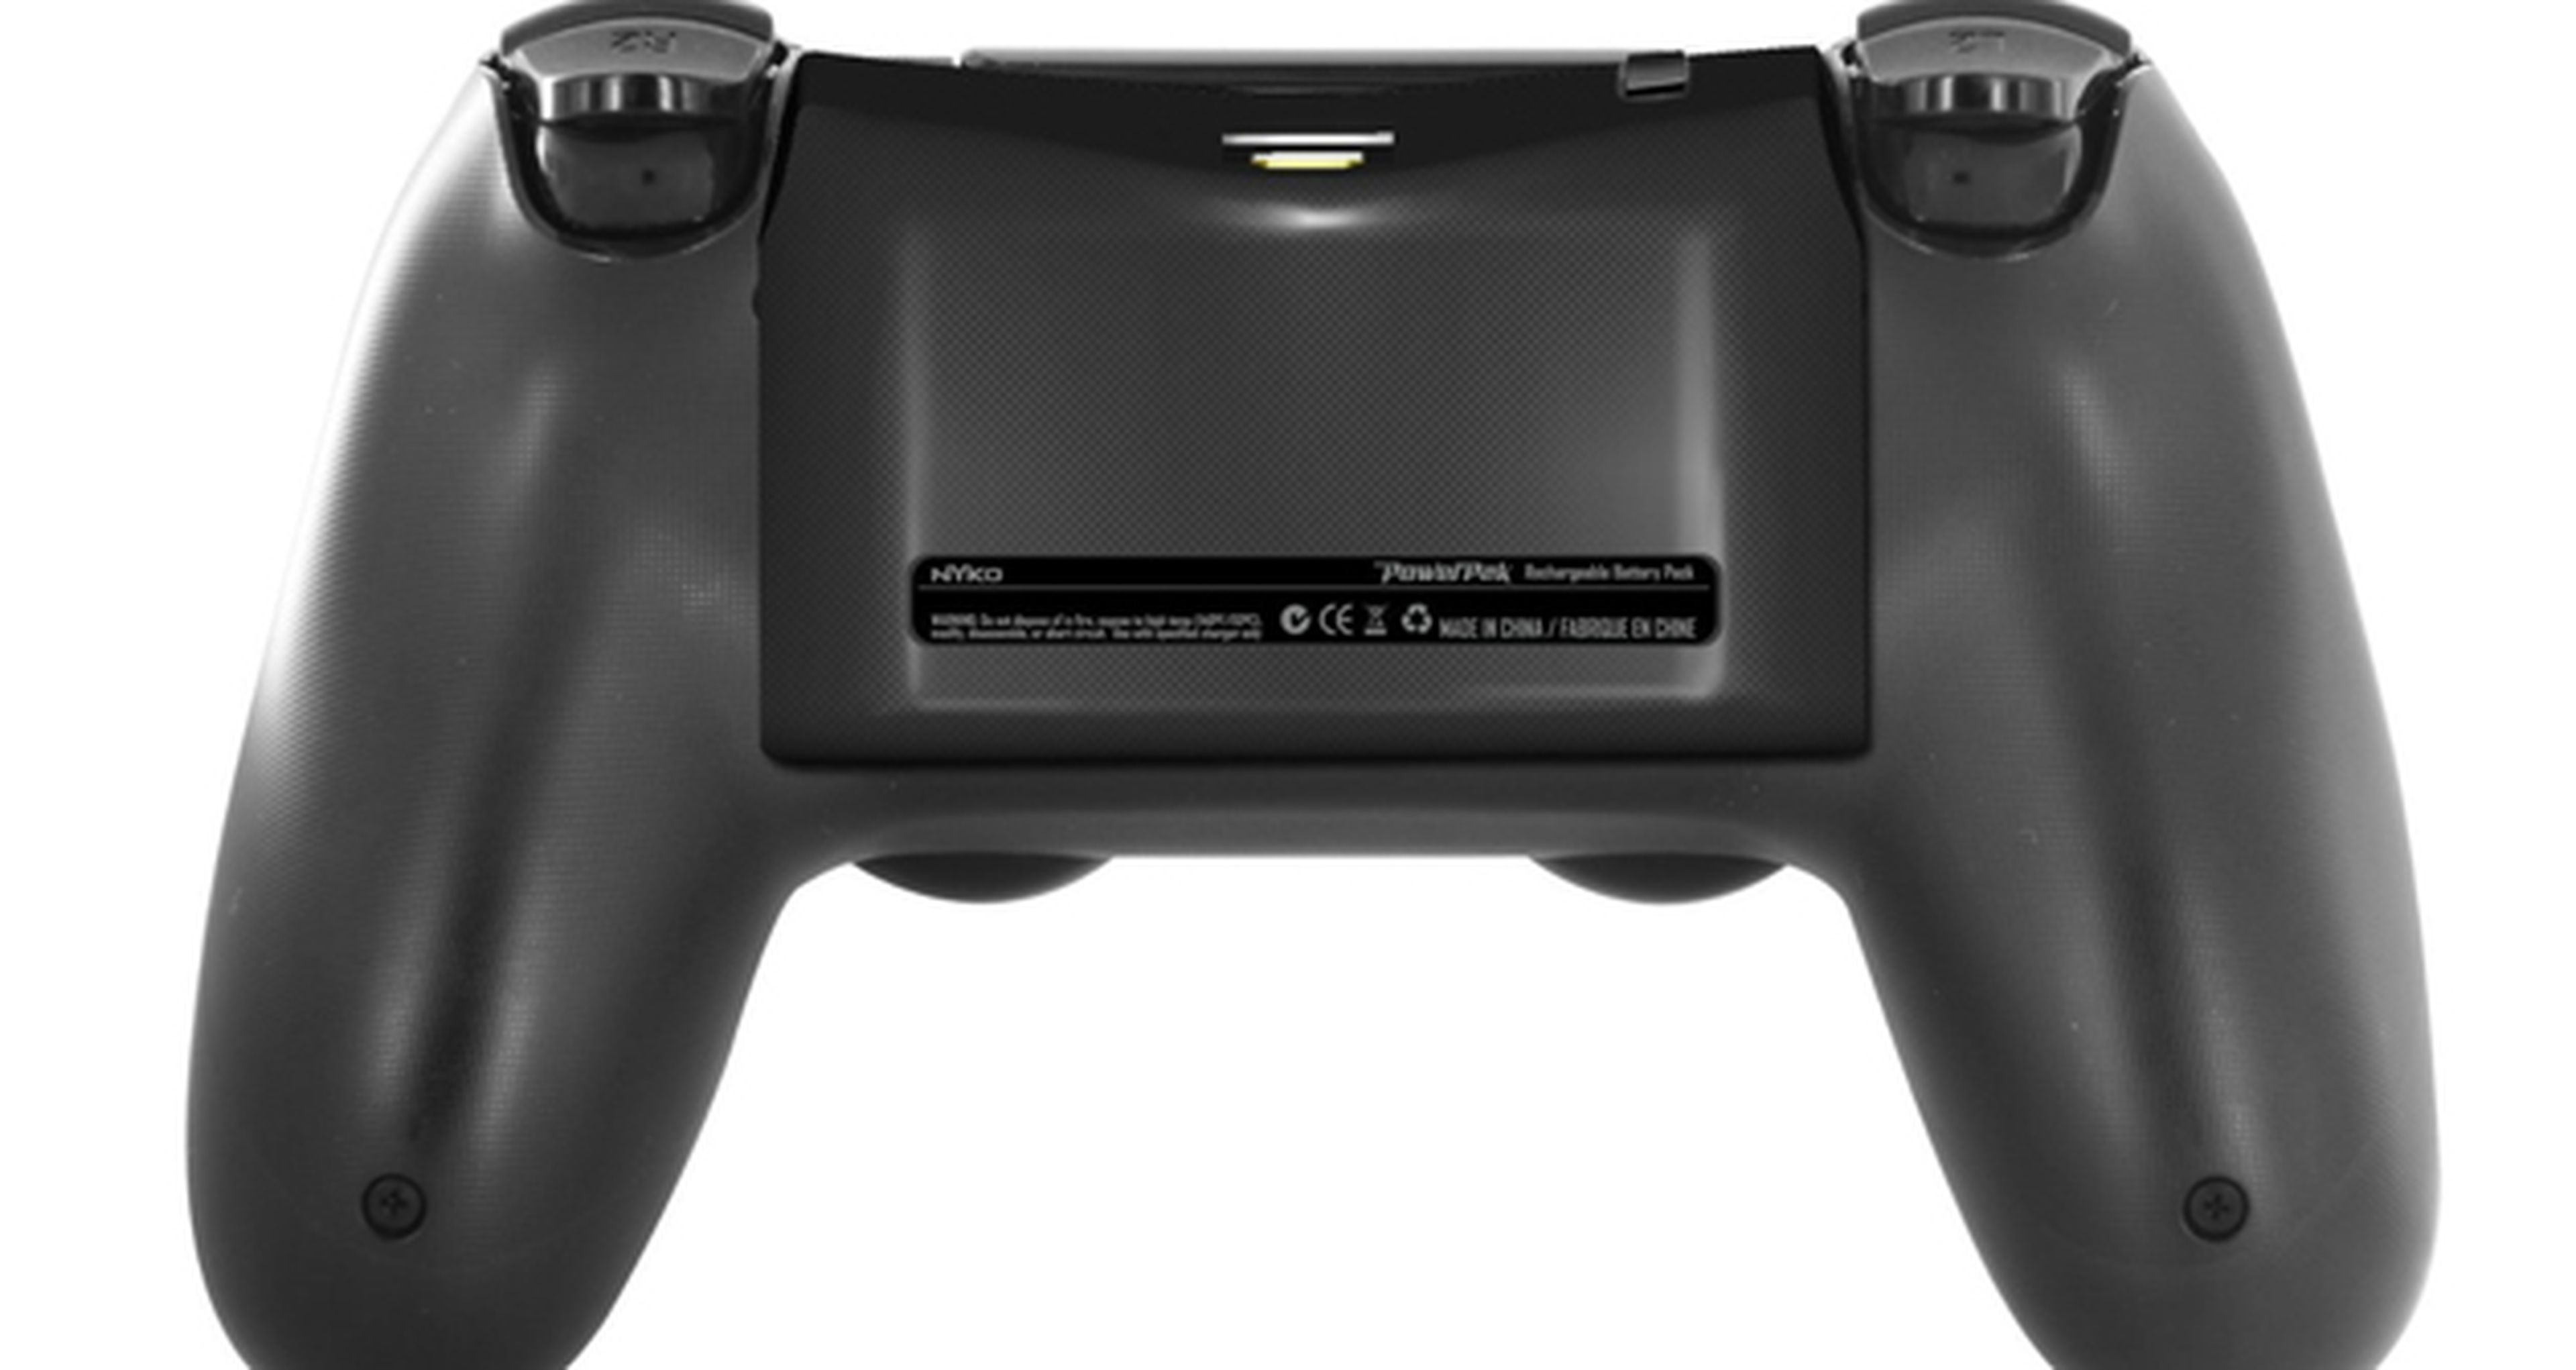 Batería extra, un nuevo accesorio para PS4